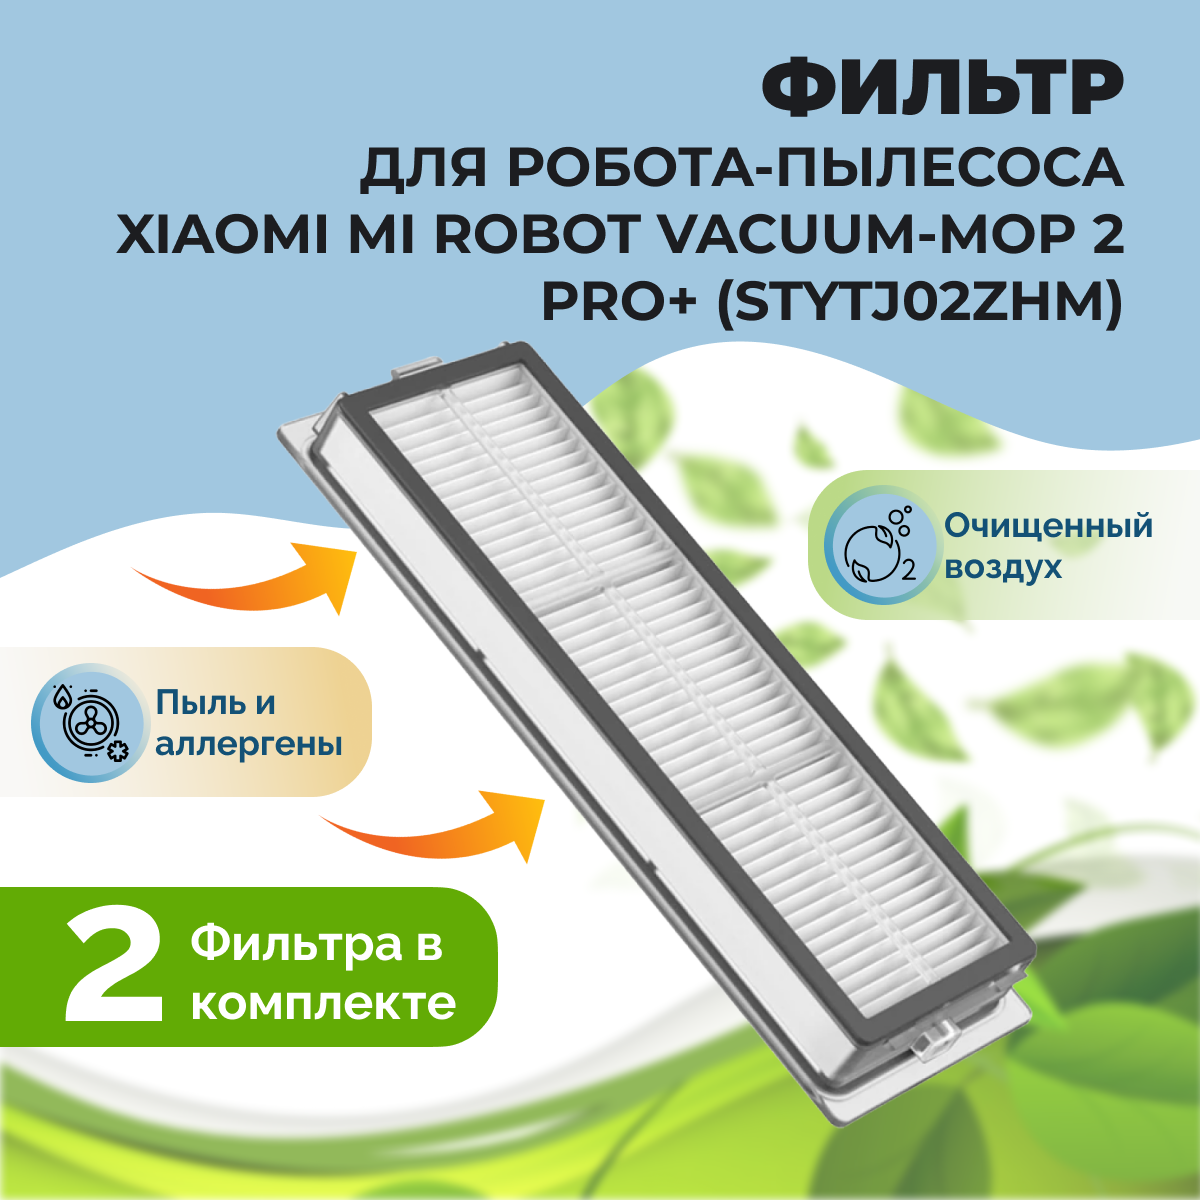 Фильтры для робота-пылесоса Dreame Xiaomi Mi Robot Vacuum-Mop 2 Pro+ (STYTJ02ZHM), 2 штуки 558109, фото 1